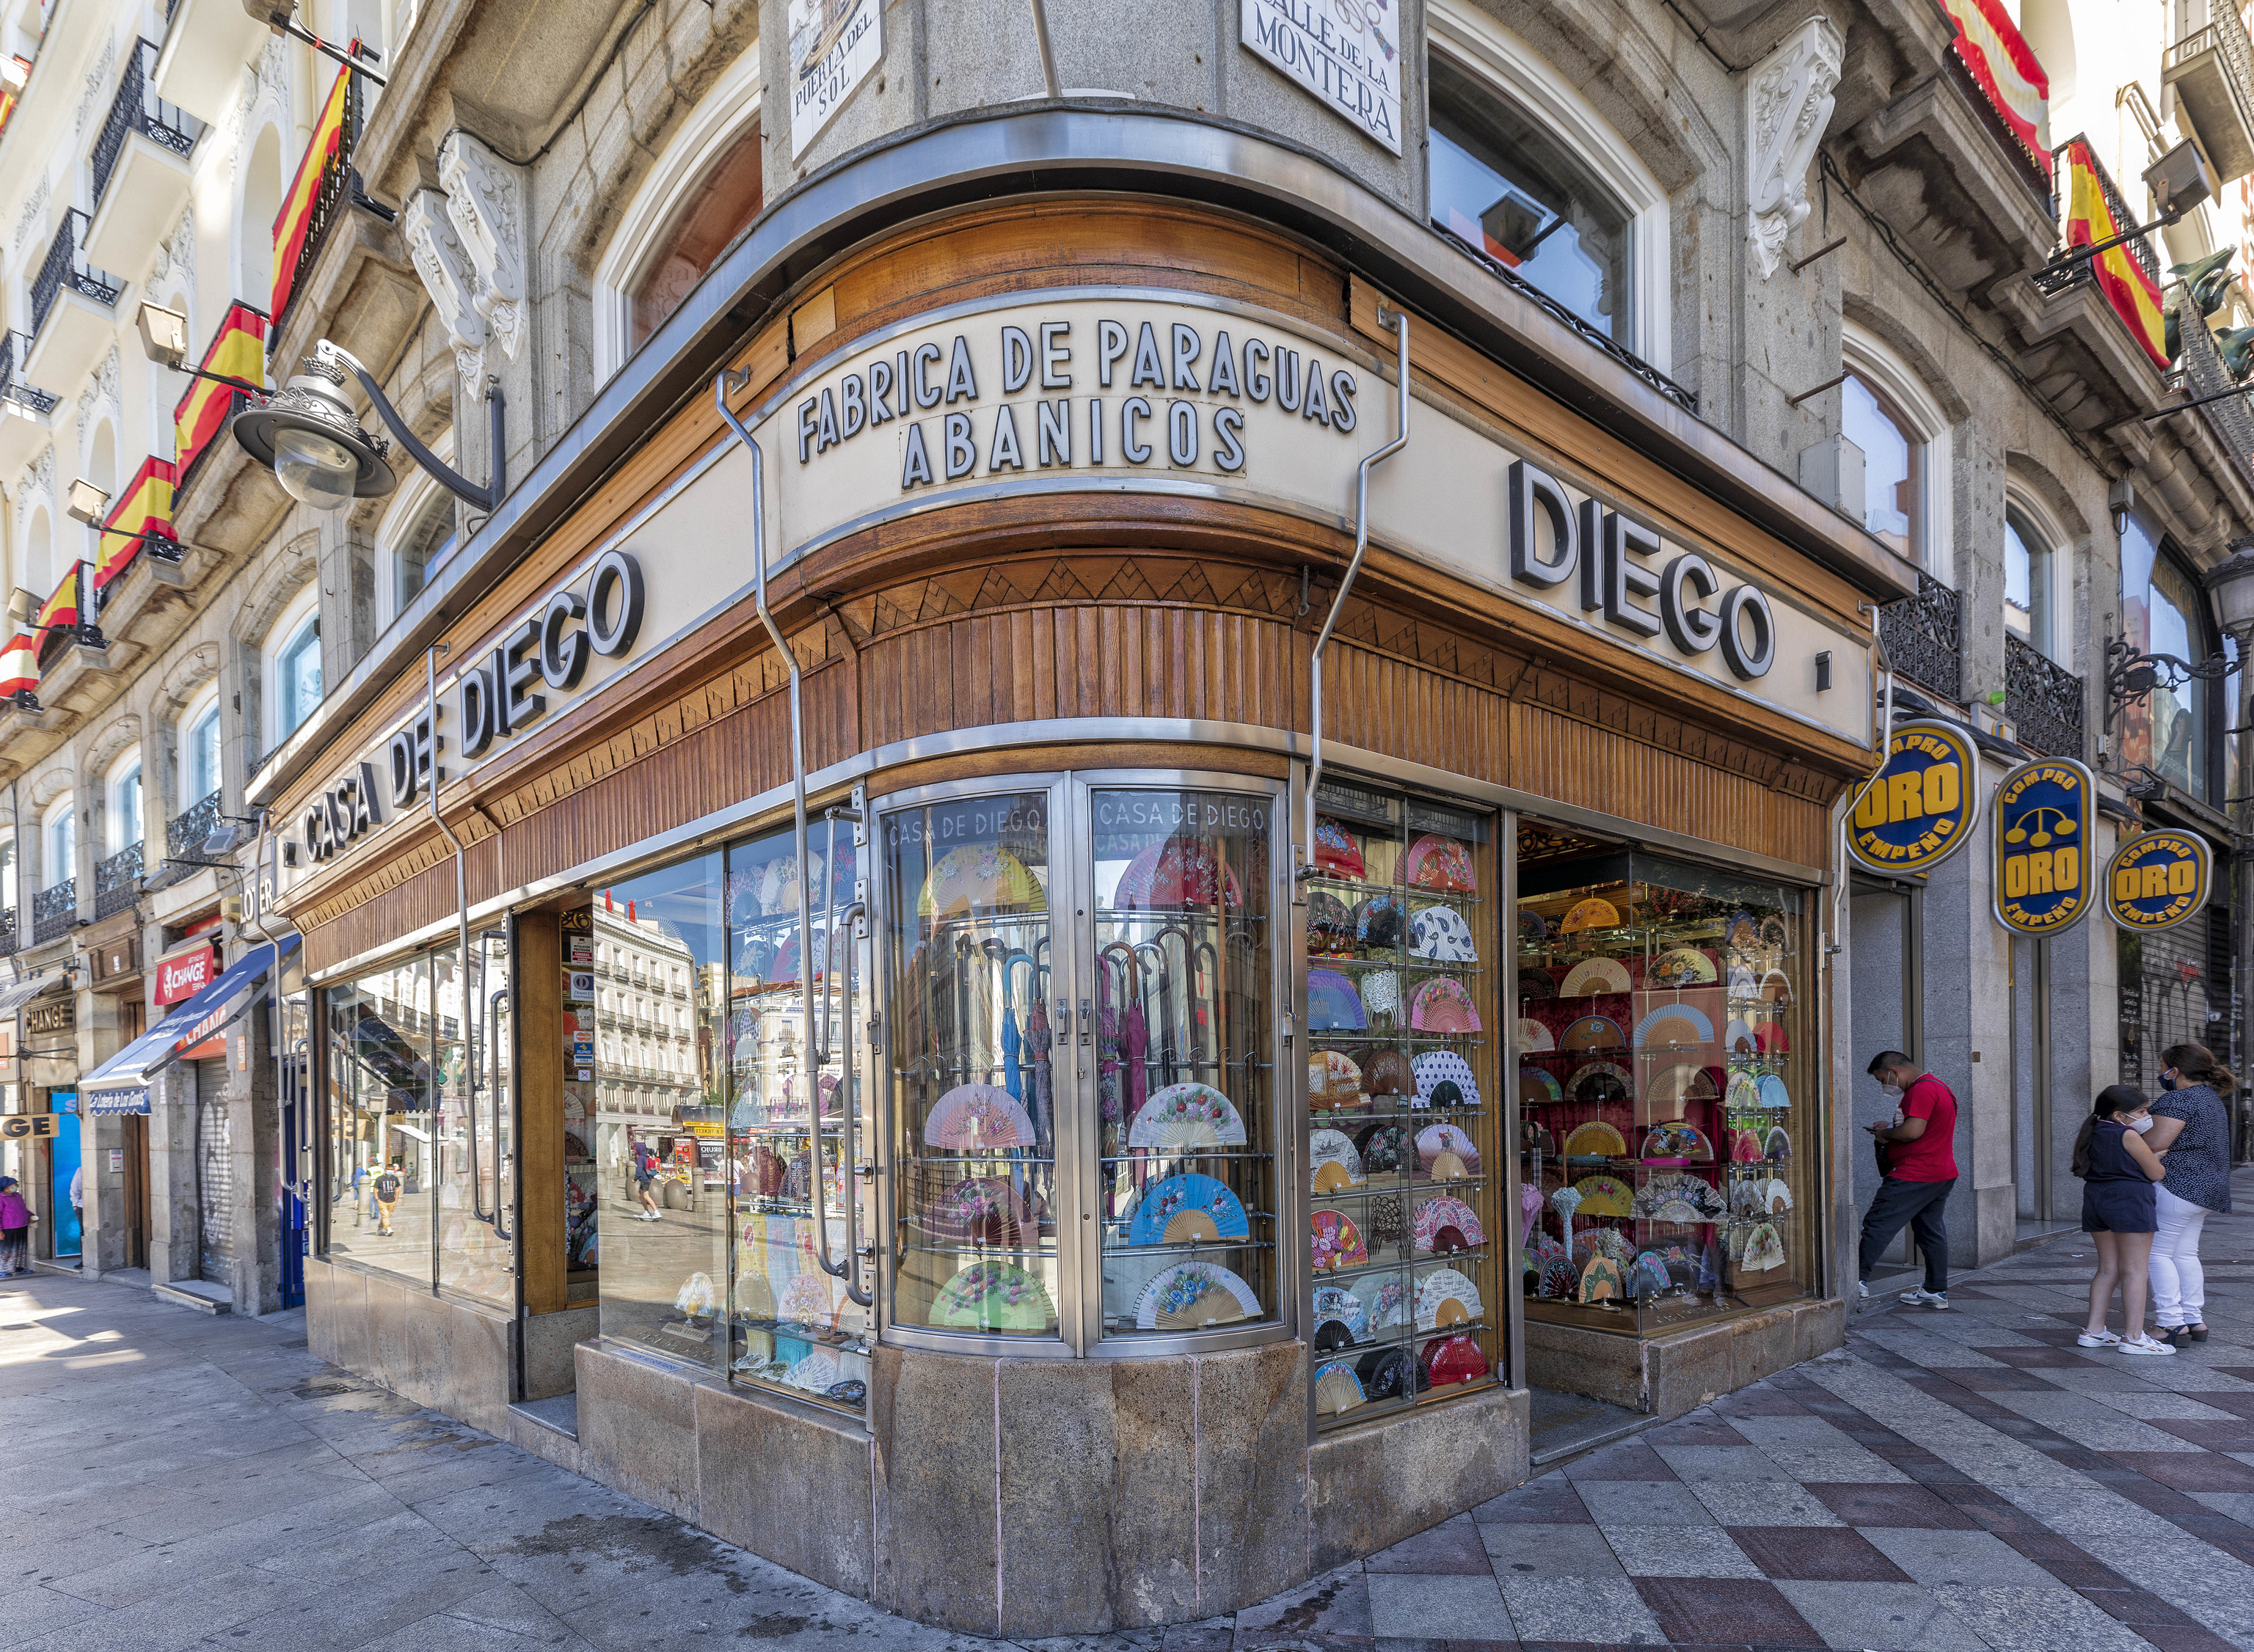 La tienda de abanicos y paraguas De Diego, en plena Puerta del Sol.